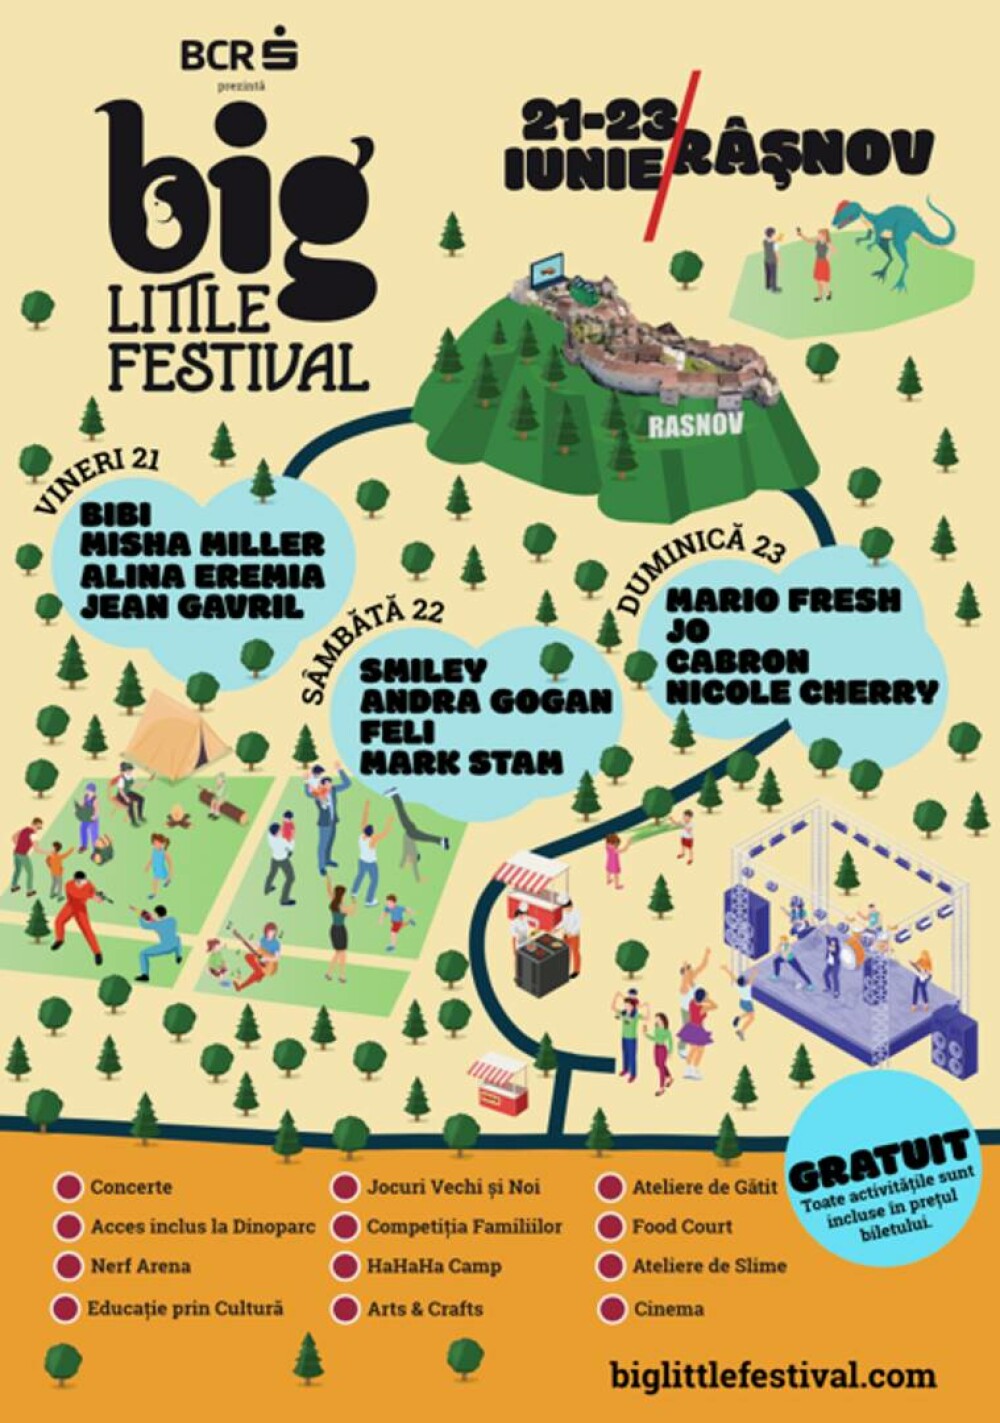 Big Little Festival. Cel mai mare castel gonflabil din Europa, un orășel magic cu 20 căsuțe tematice, ateliere, ATV-uri - Imaginea 5